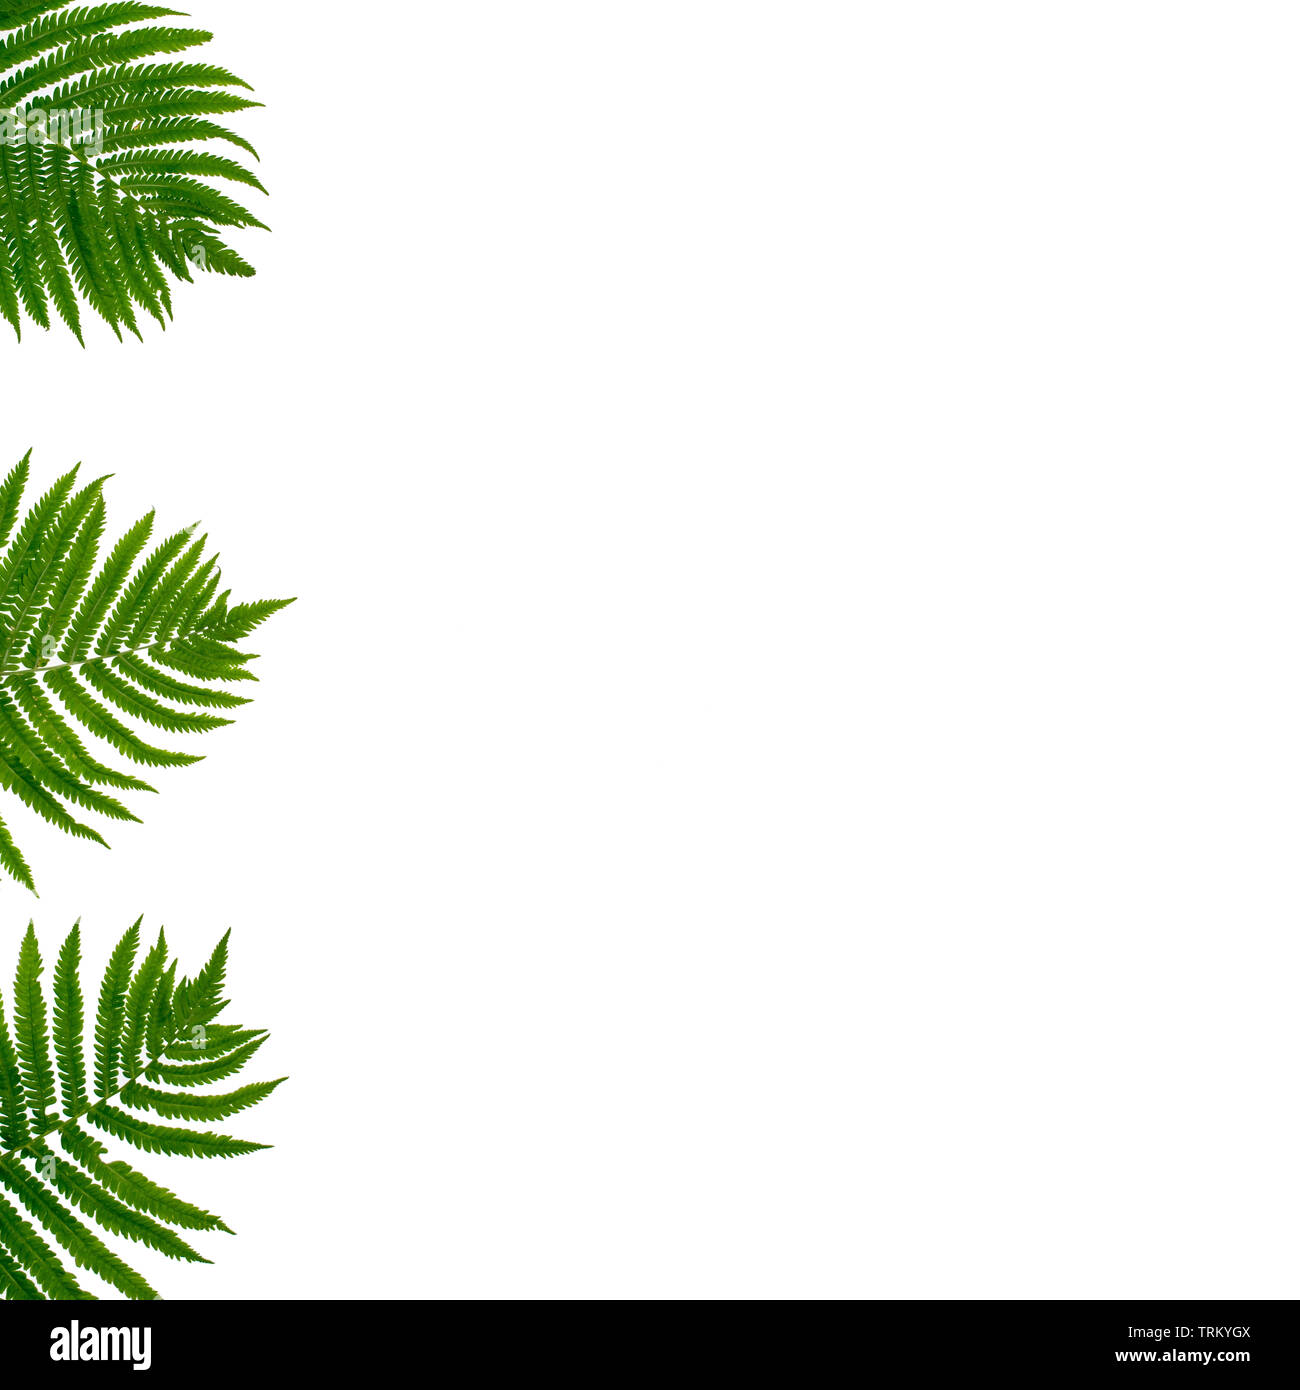 Hoja de palmera ramas verdes sobre fondo blanco. Vista superior de la lay, plana, diseño minimalista con tropical de hojas de helecho, hojas frescas de Botánica Foto de stock